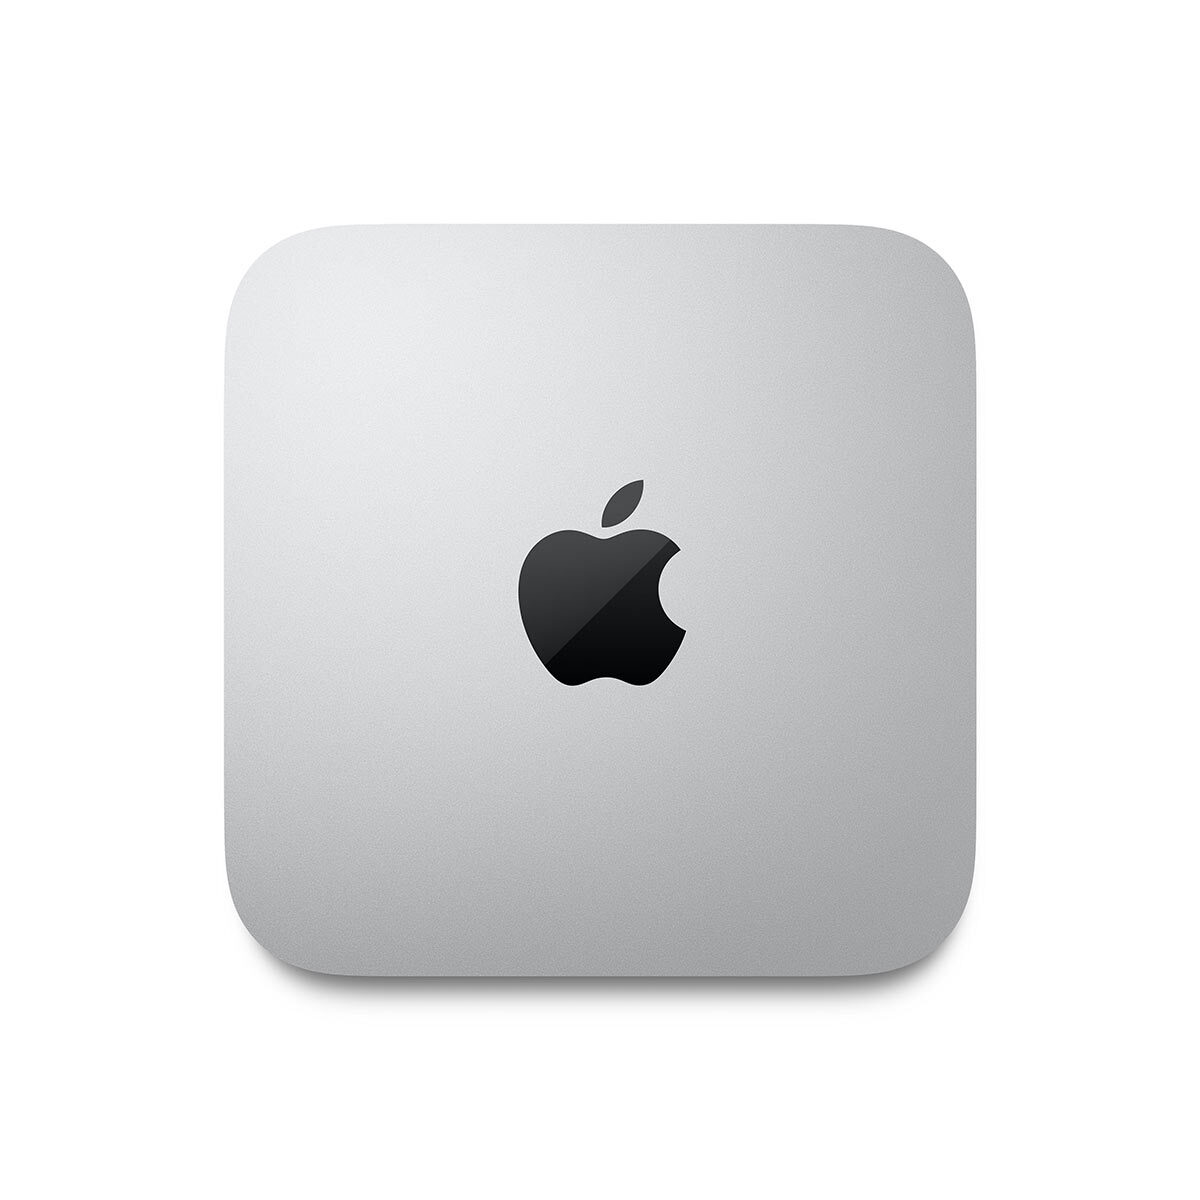 Buy Apple Mac Mini, Apple M1 Chip, 8GB RAM, 512GB SSD, MGNR3B/A at costco.co.uk